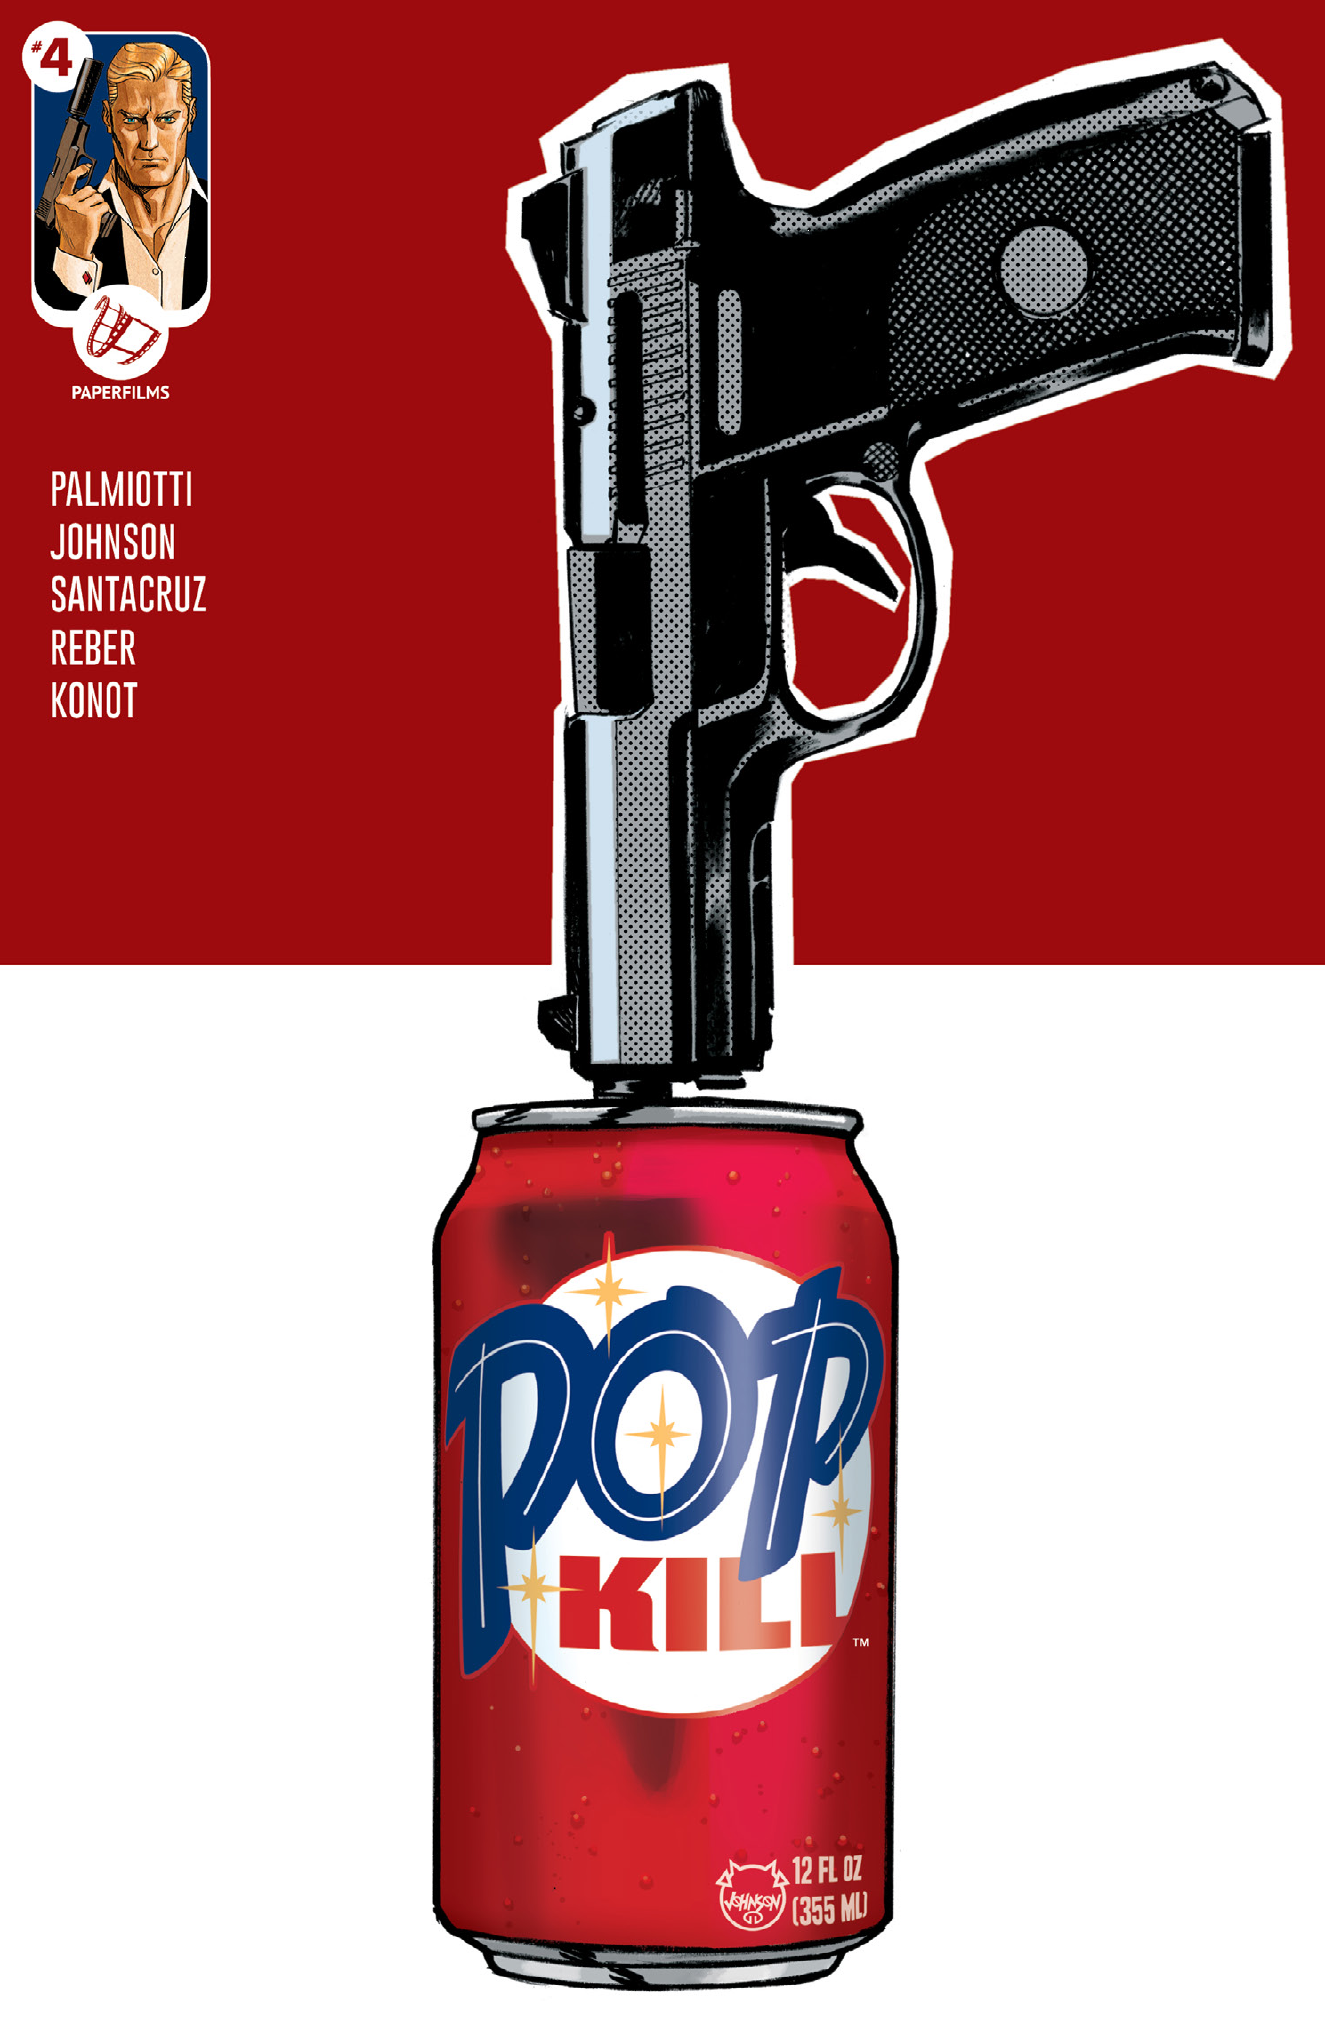 Read online Pop Kill comic -  Issue #4 - 1